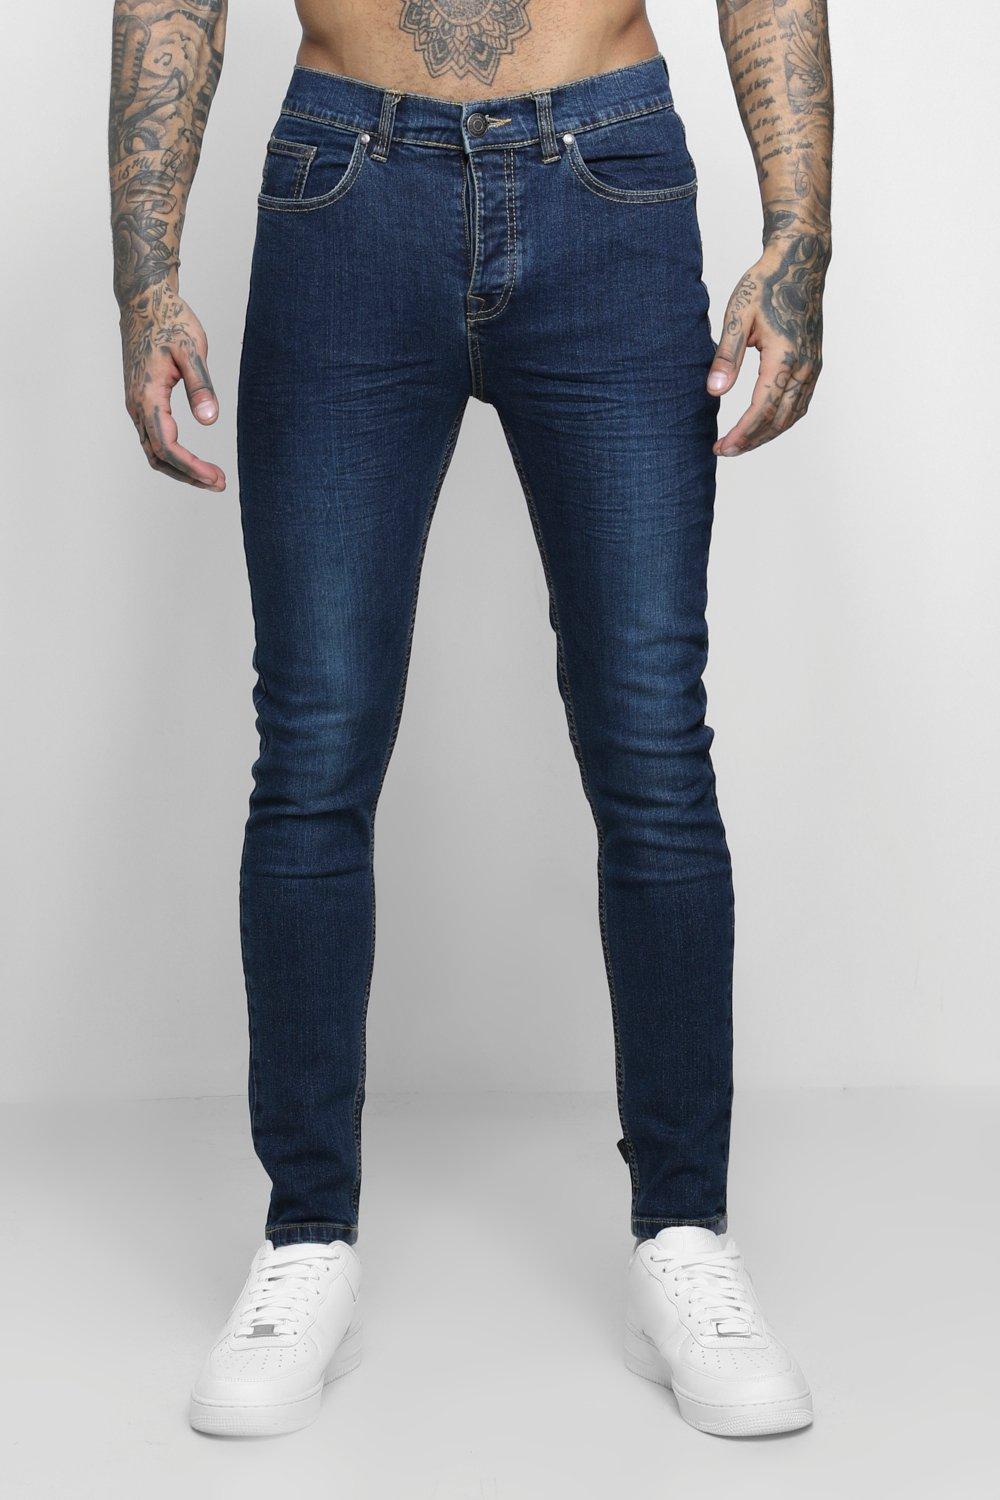 mens dsquared2 jeans sale